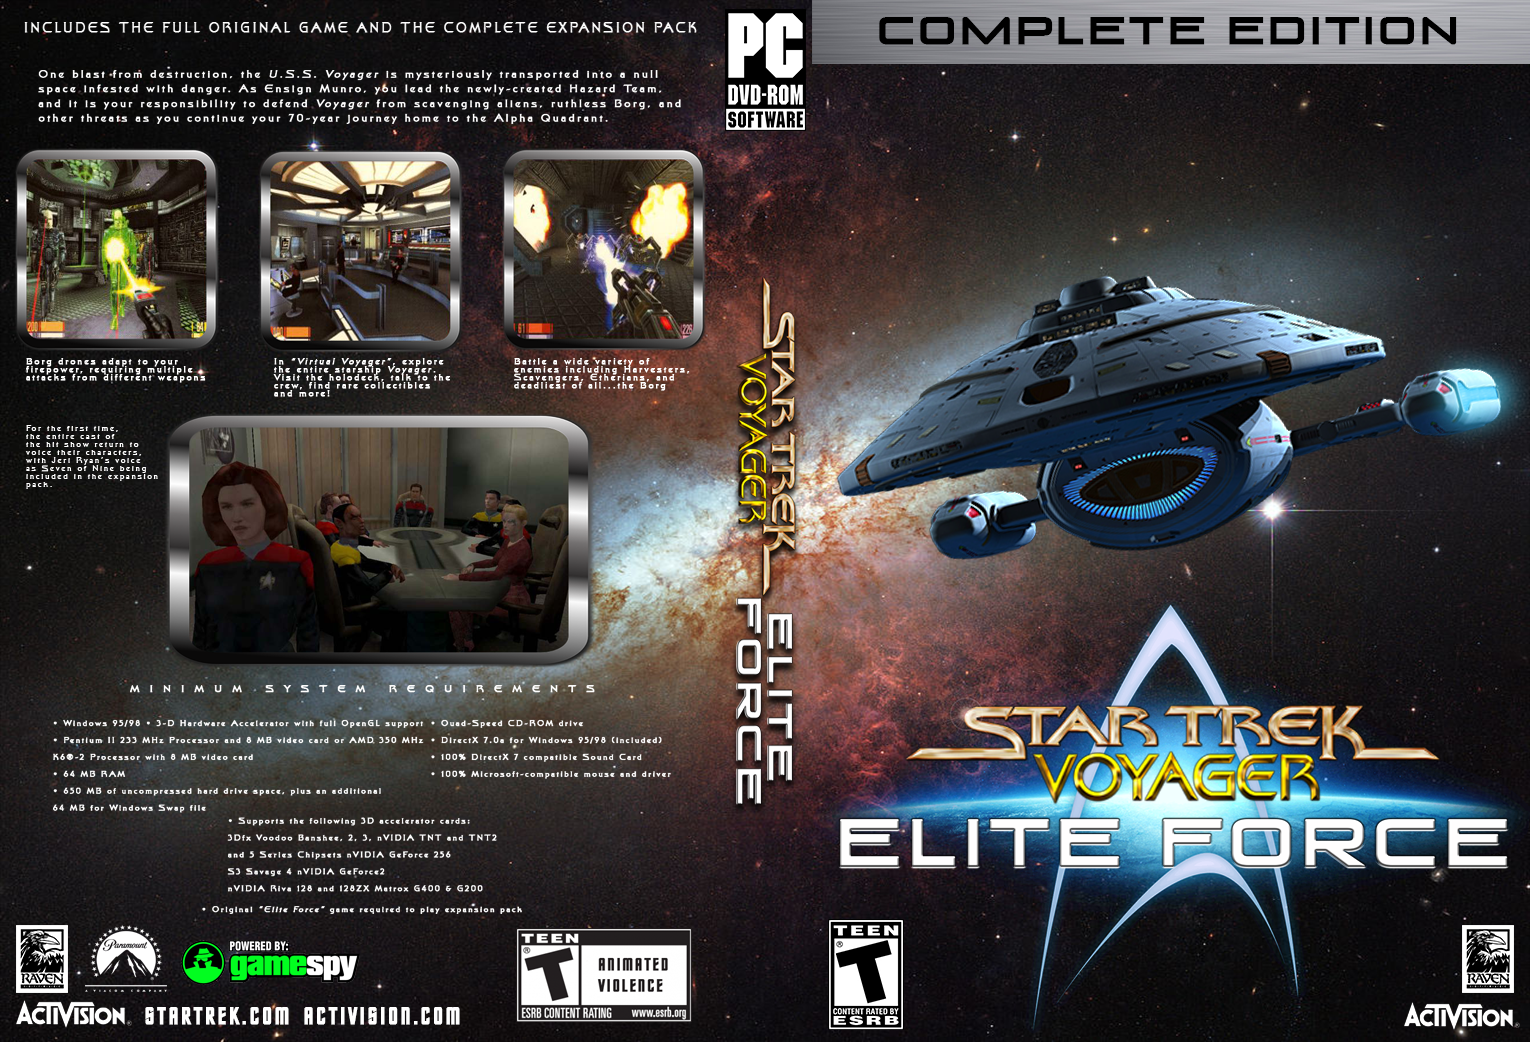 Star Trek Voyager: Elite Force box cover